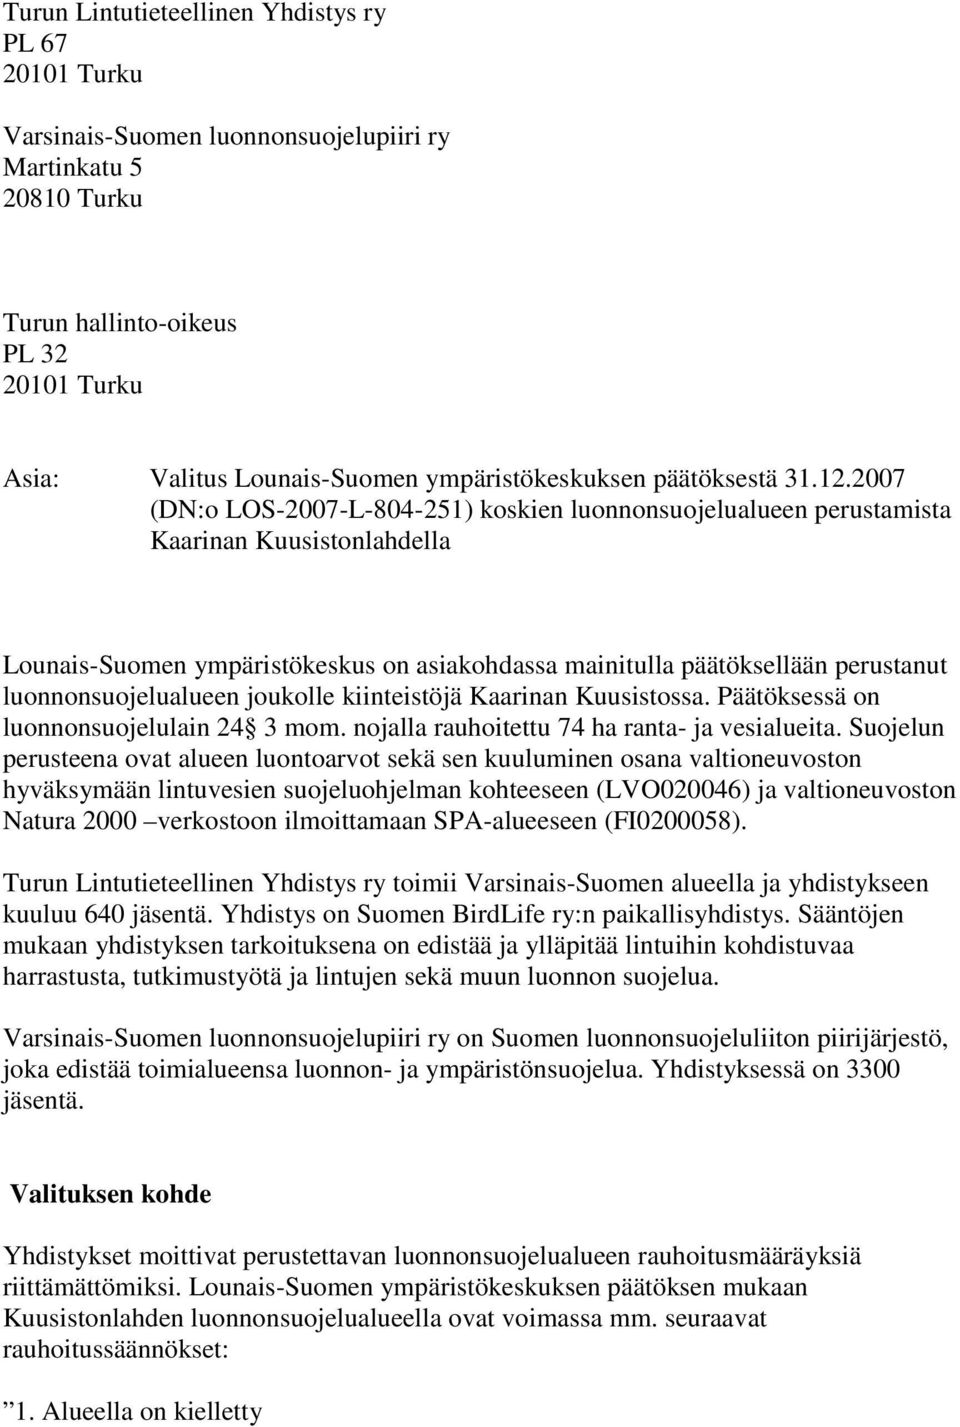 2007 (DN:o LOS-2007-L-804-251) koskien luonnonsuojelualueen perustamista Kaarinan Kuusistonlahdella Lounais-Suomen ympäristökeskus on asiakohdassa mainitulla päätöksellään perustanut